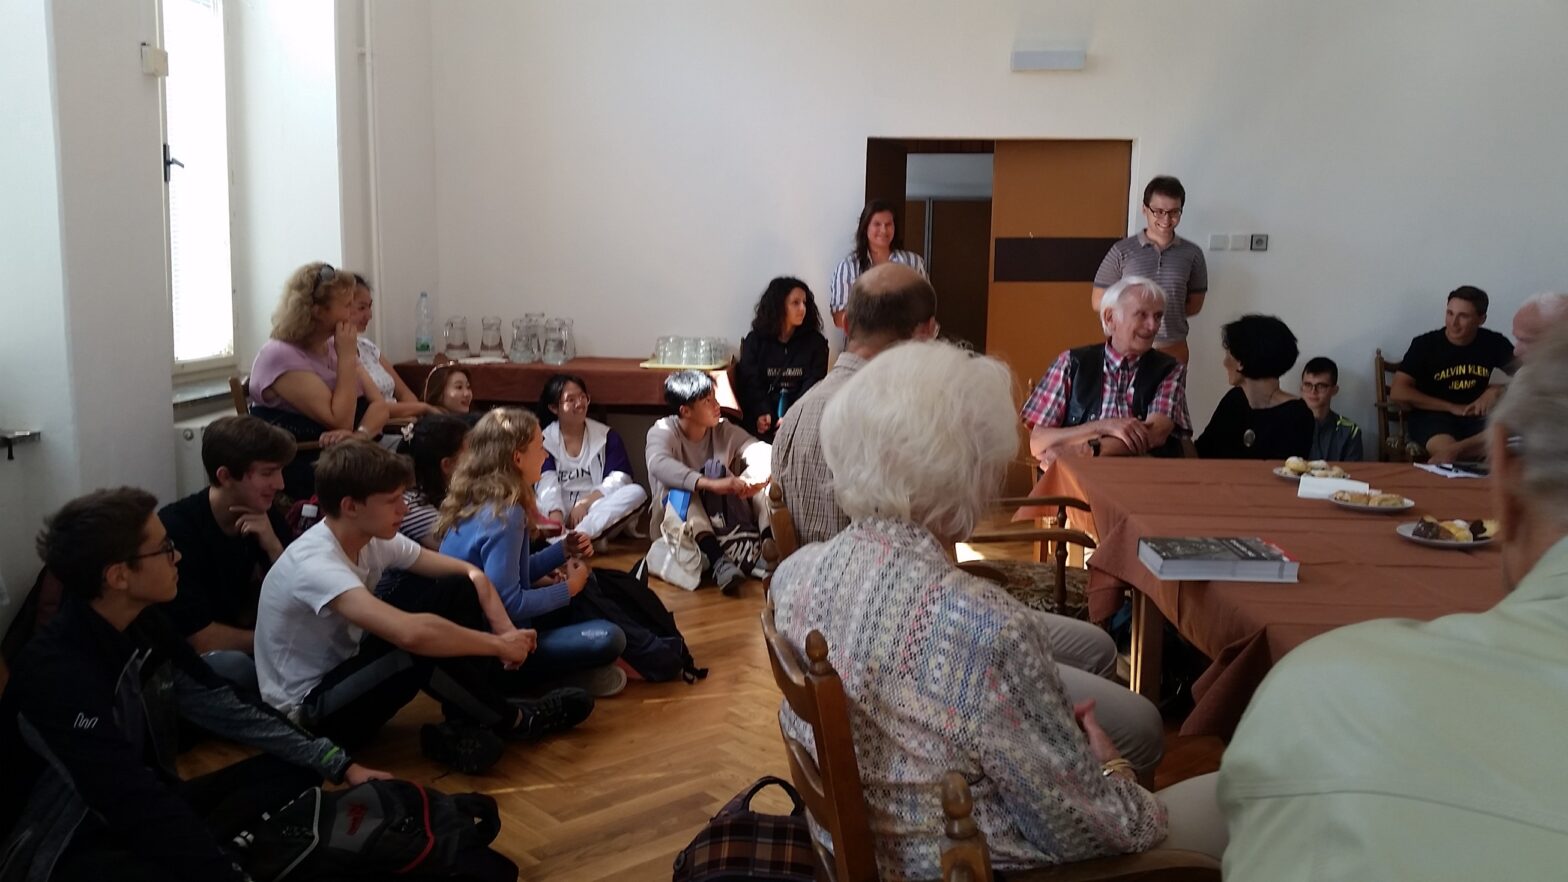 Zeitzeugen und Schüler des English College Prague führen eine lebhafte Diskussion - Foto: Helmut Schmidt